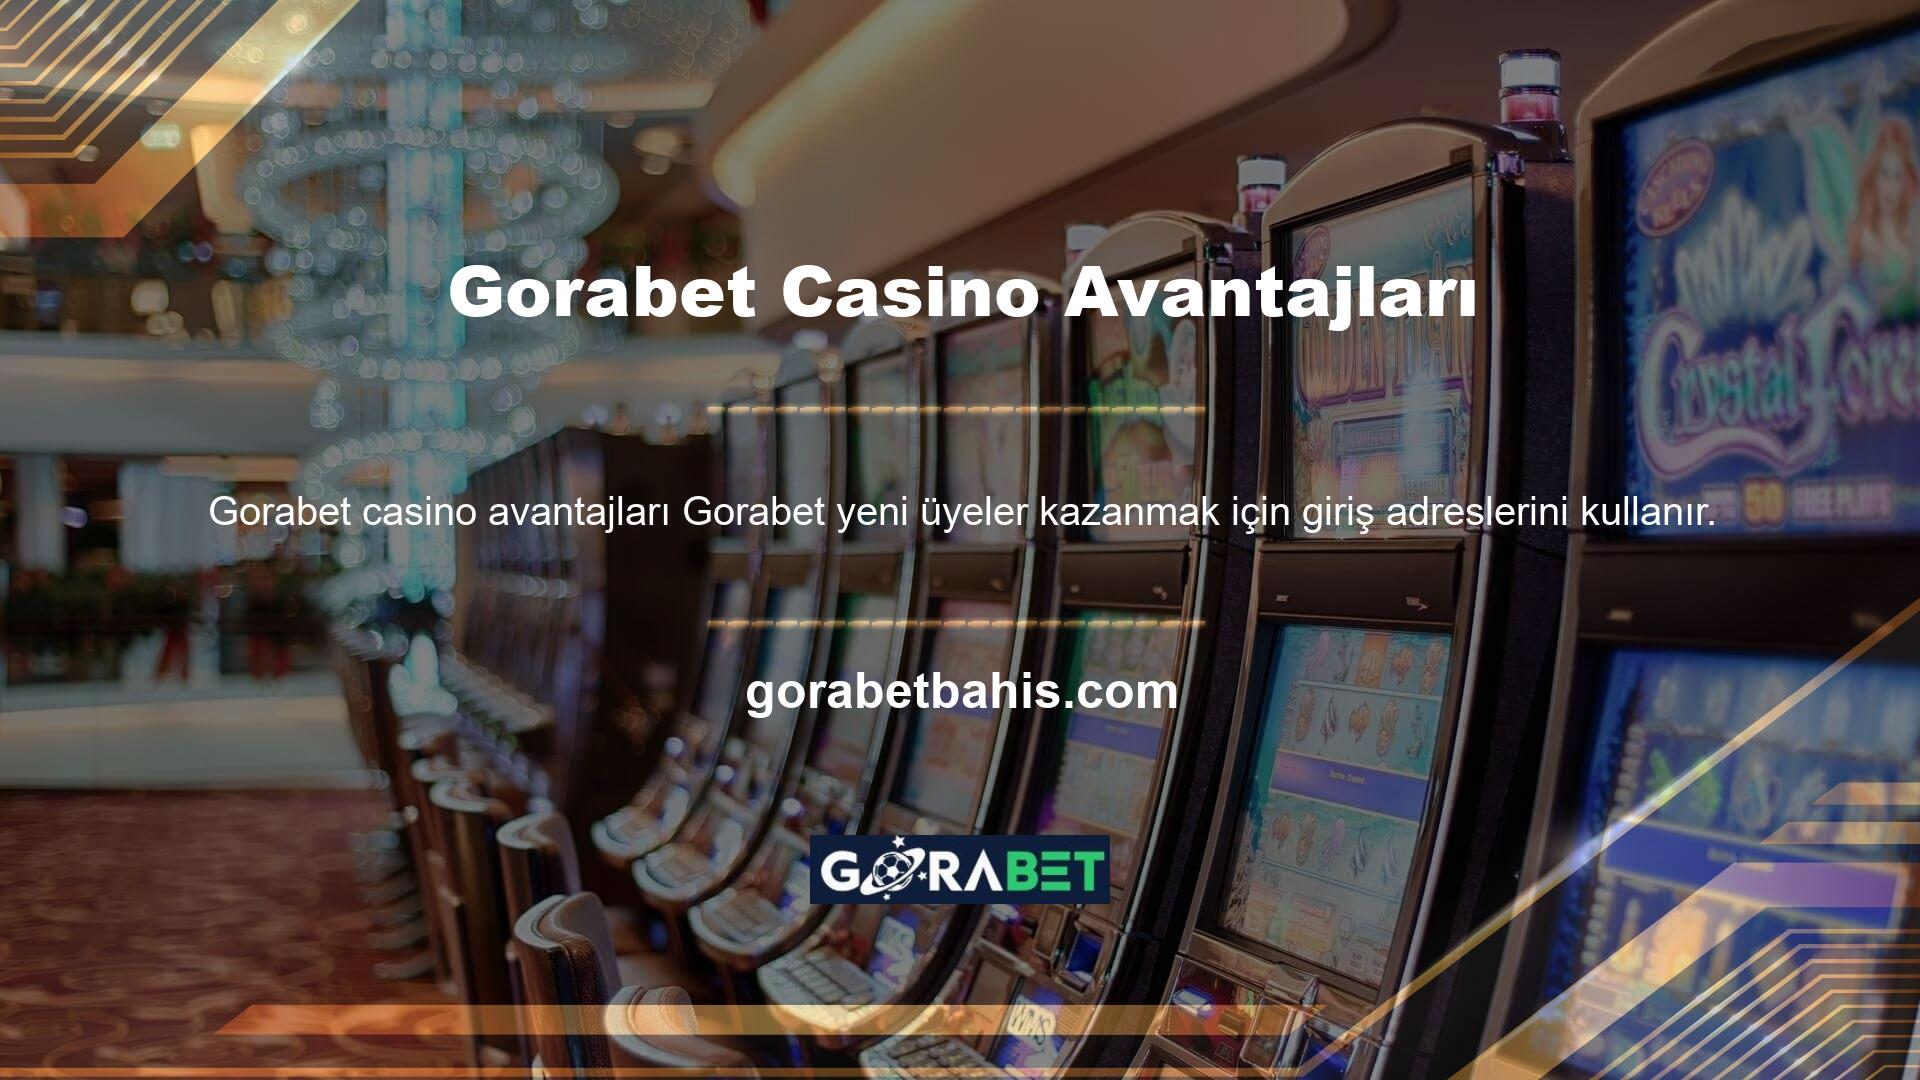 Gorabet Casino Katının Avantajları: Arama motoruna sitenin adını yazarak kayıtlı adresi bulabilirsiniz